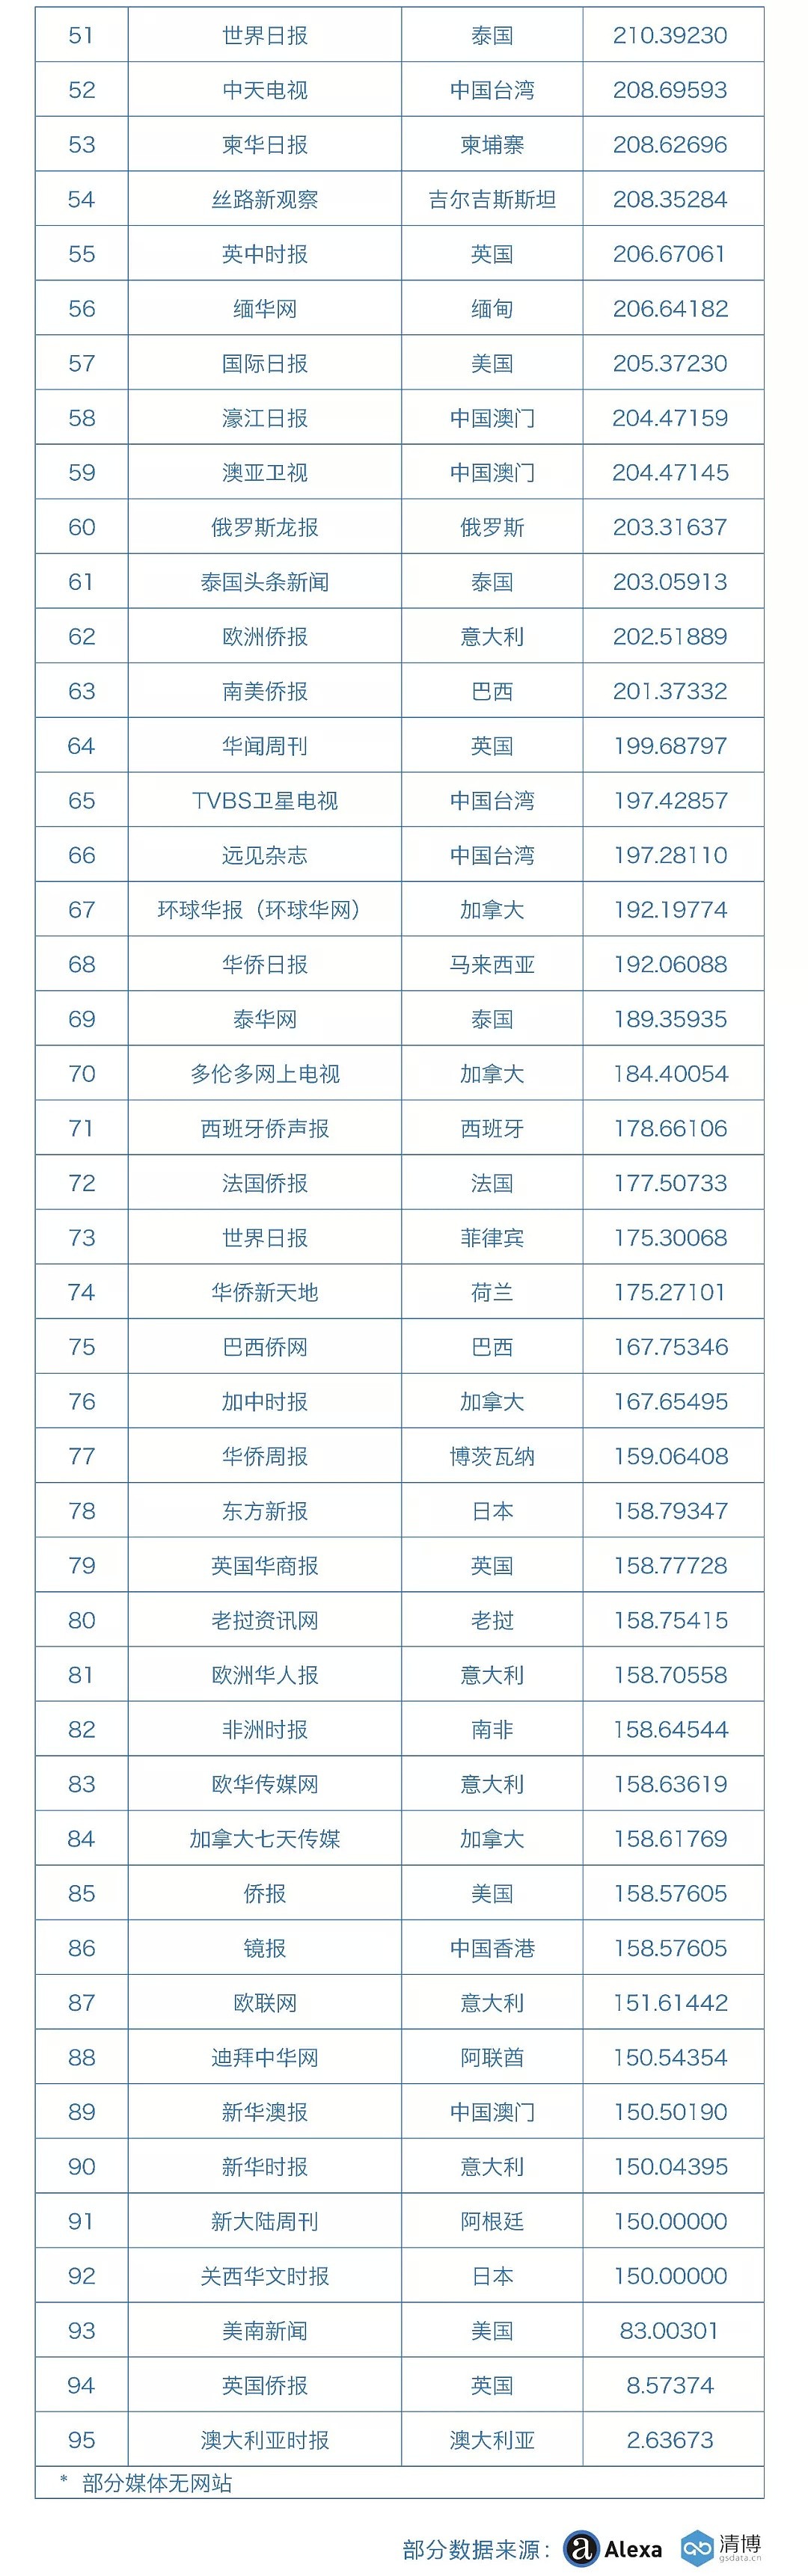 海外华文传媒新媒体影响力榜单发布 - 9